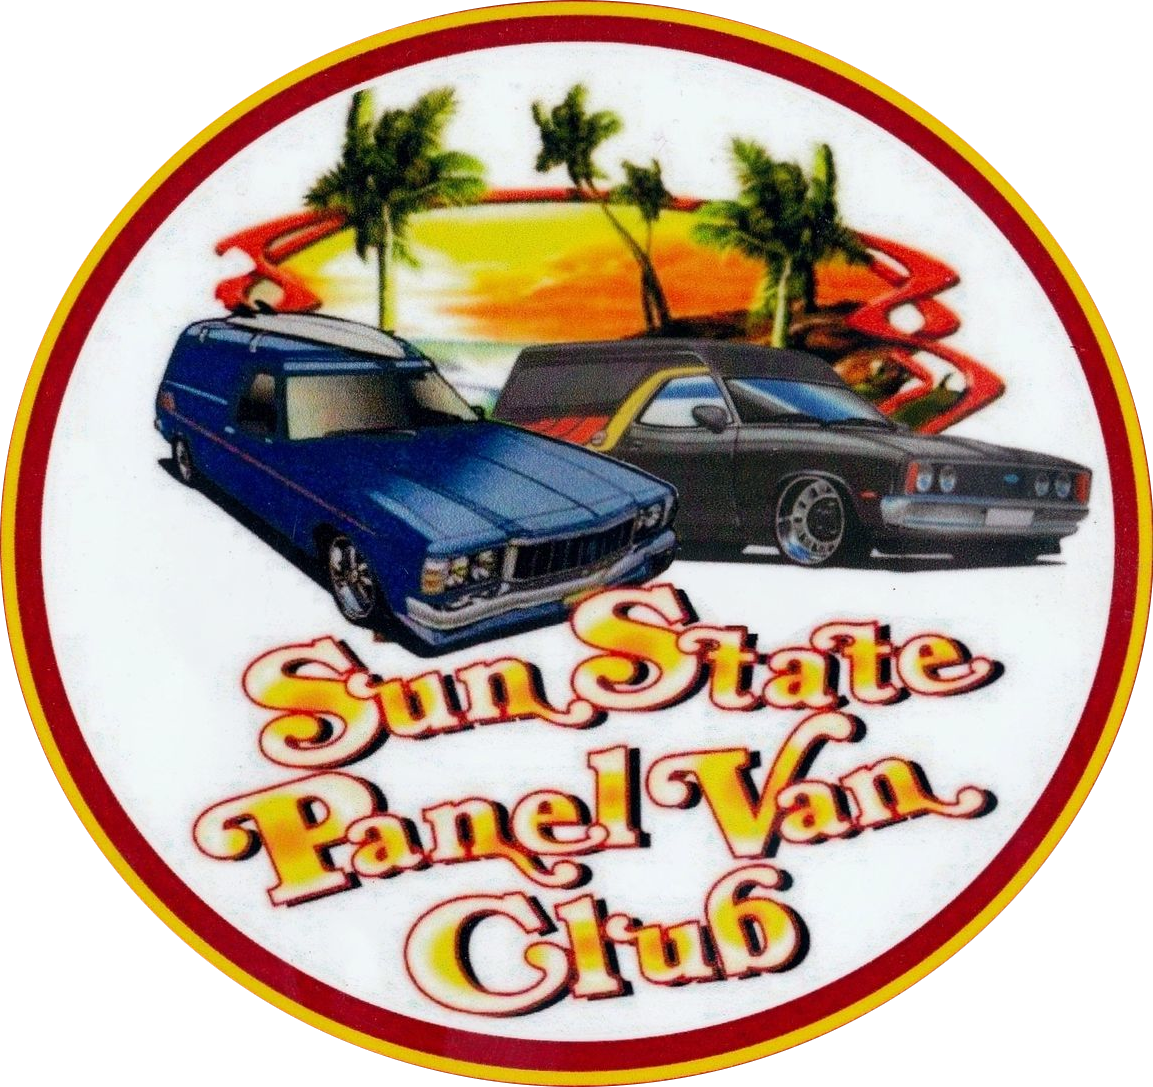 Sunstate Panel Van Club Inc.